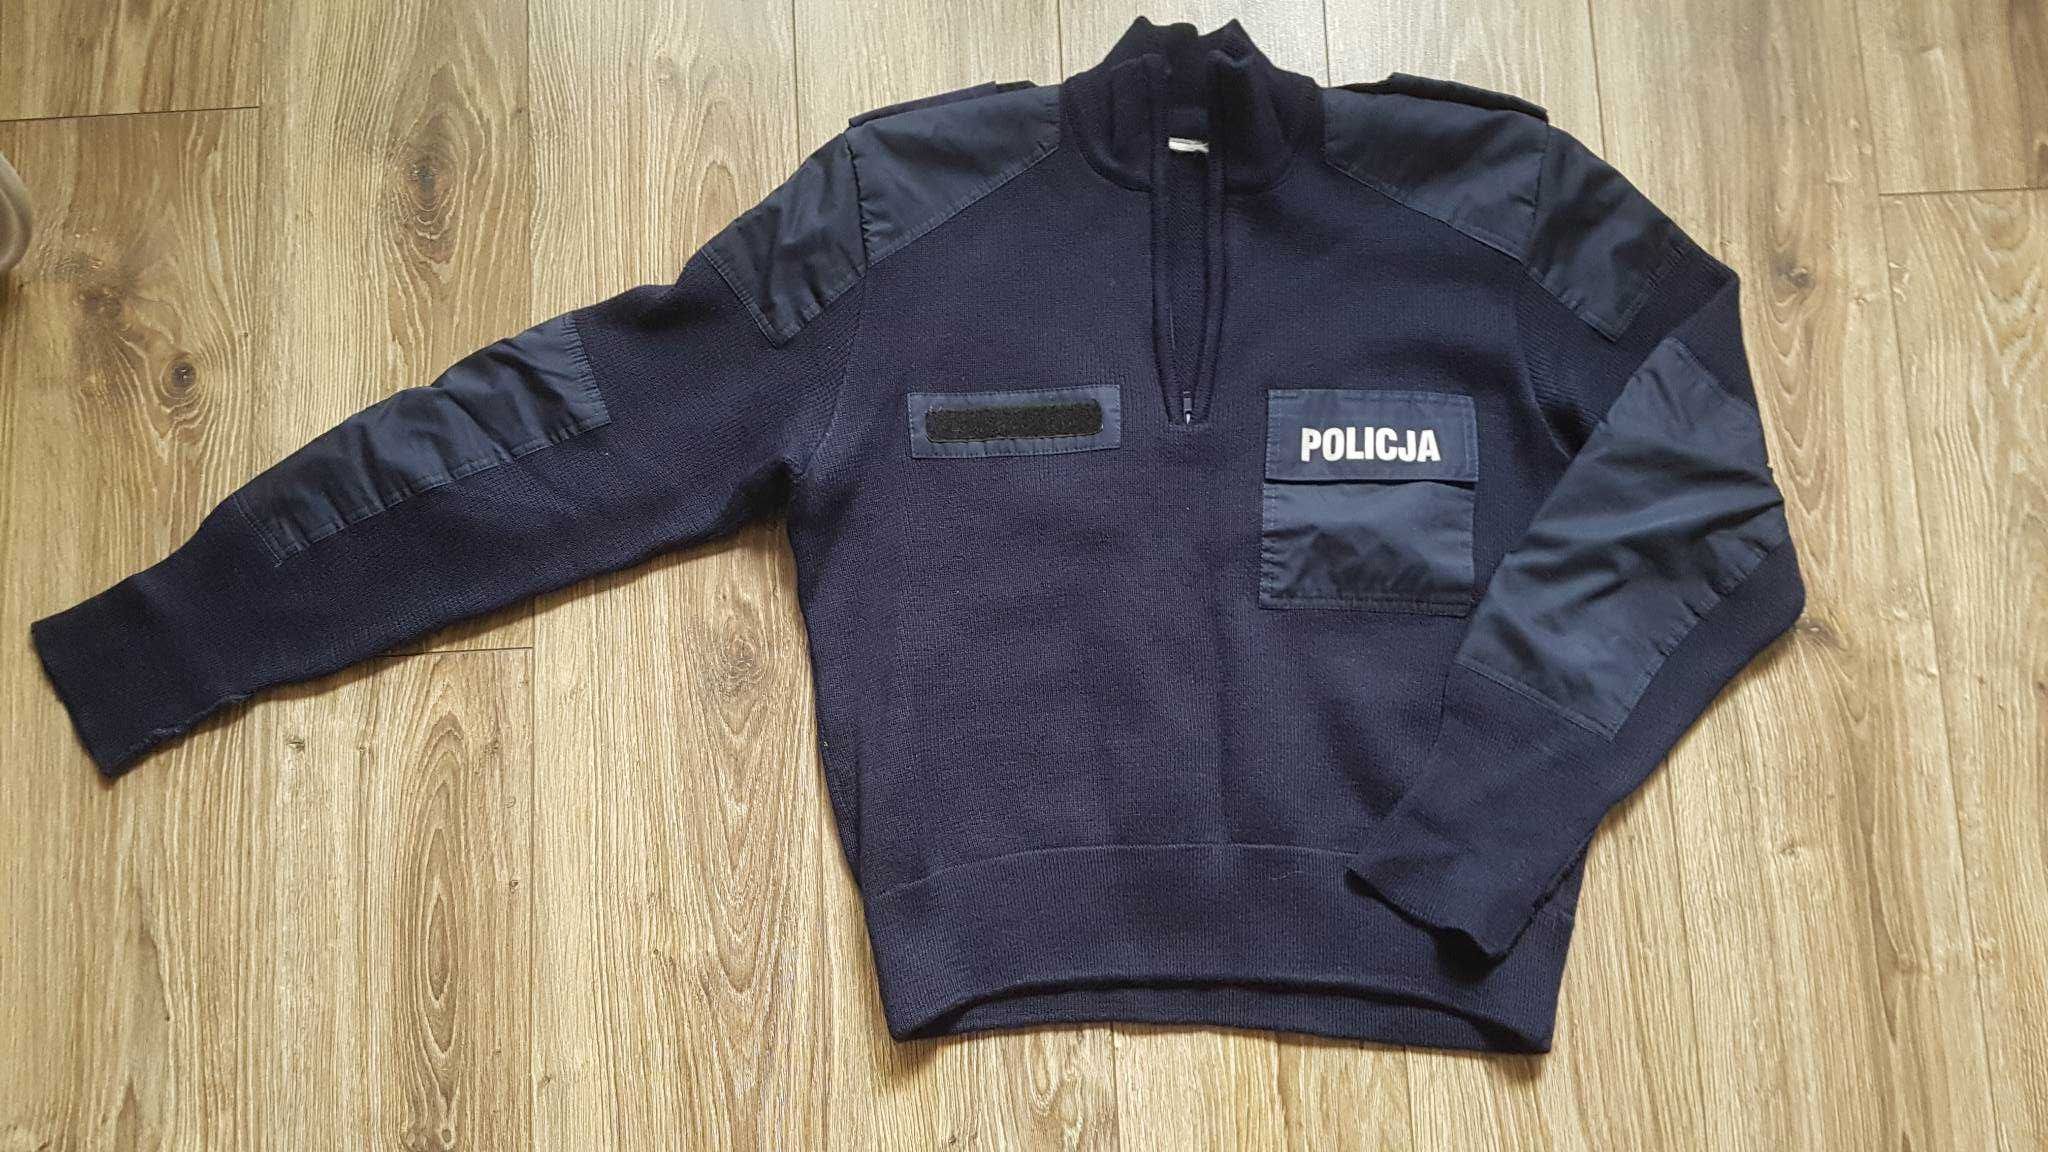 POLICJA - sweter służbowy - używany